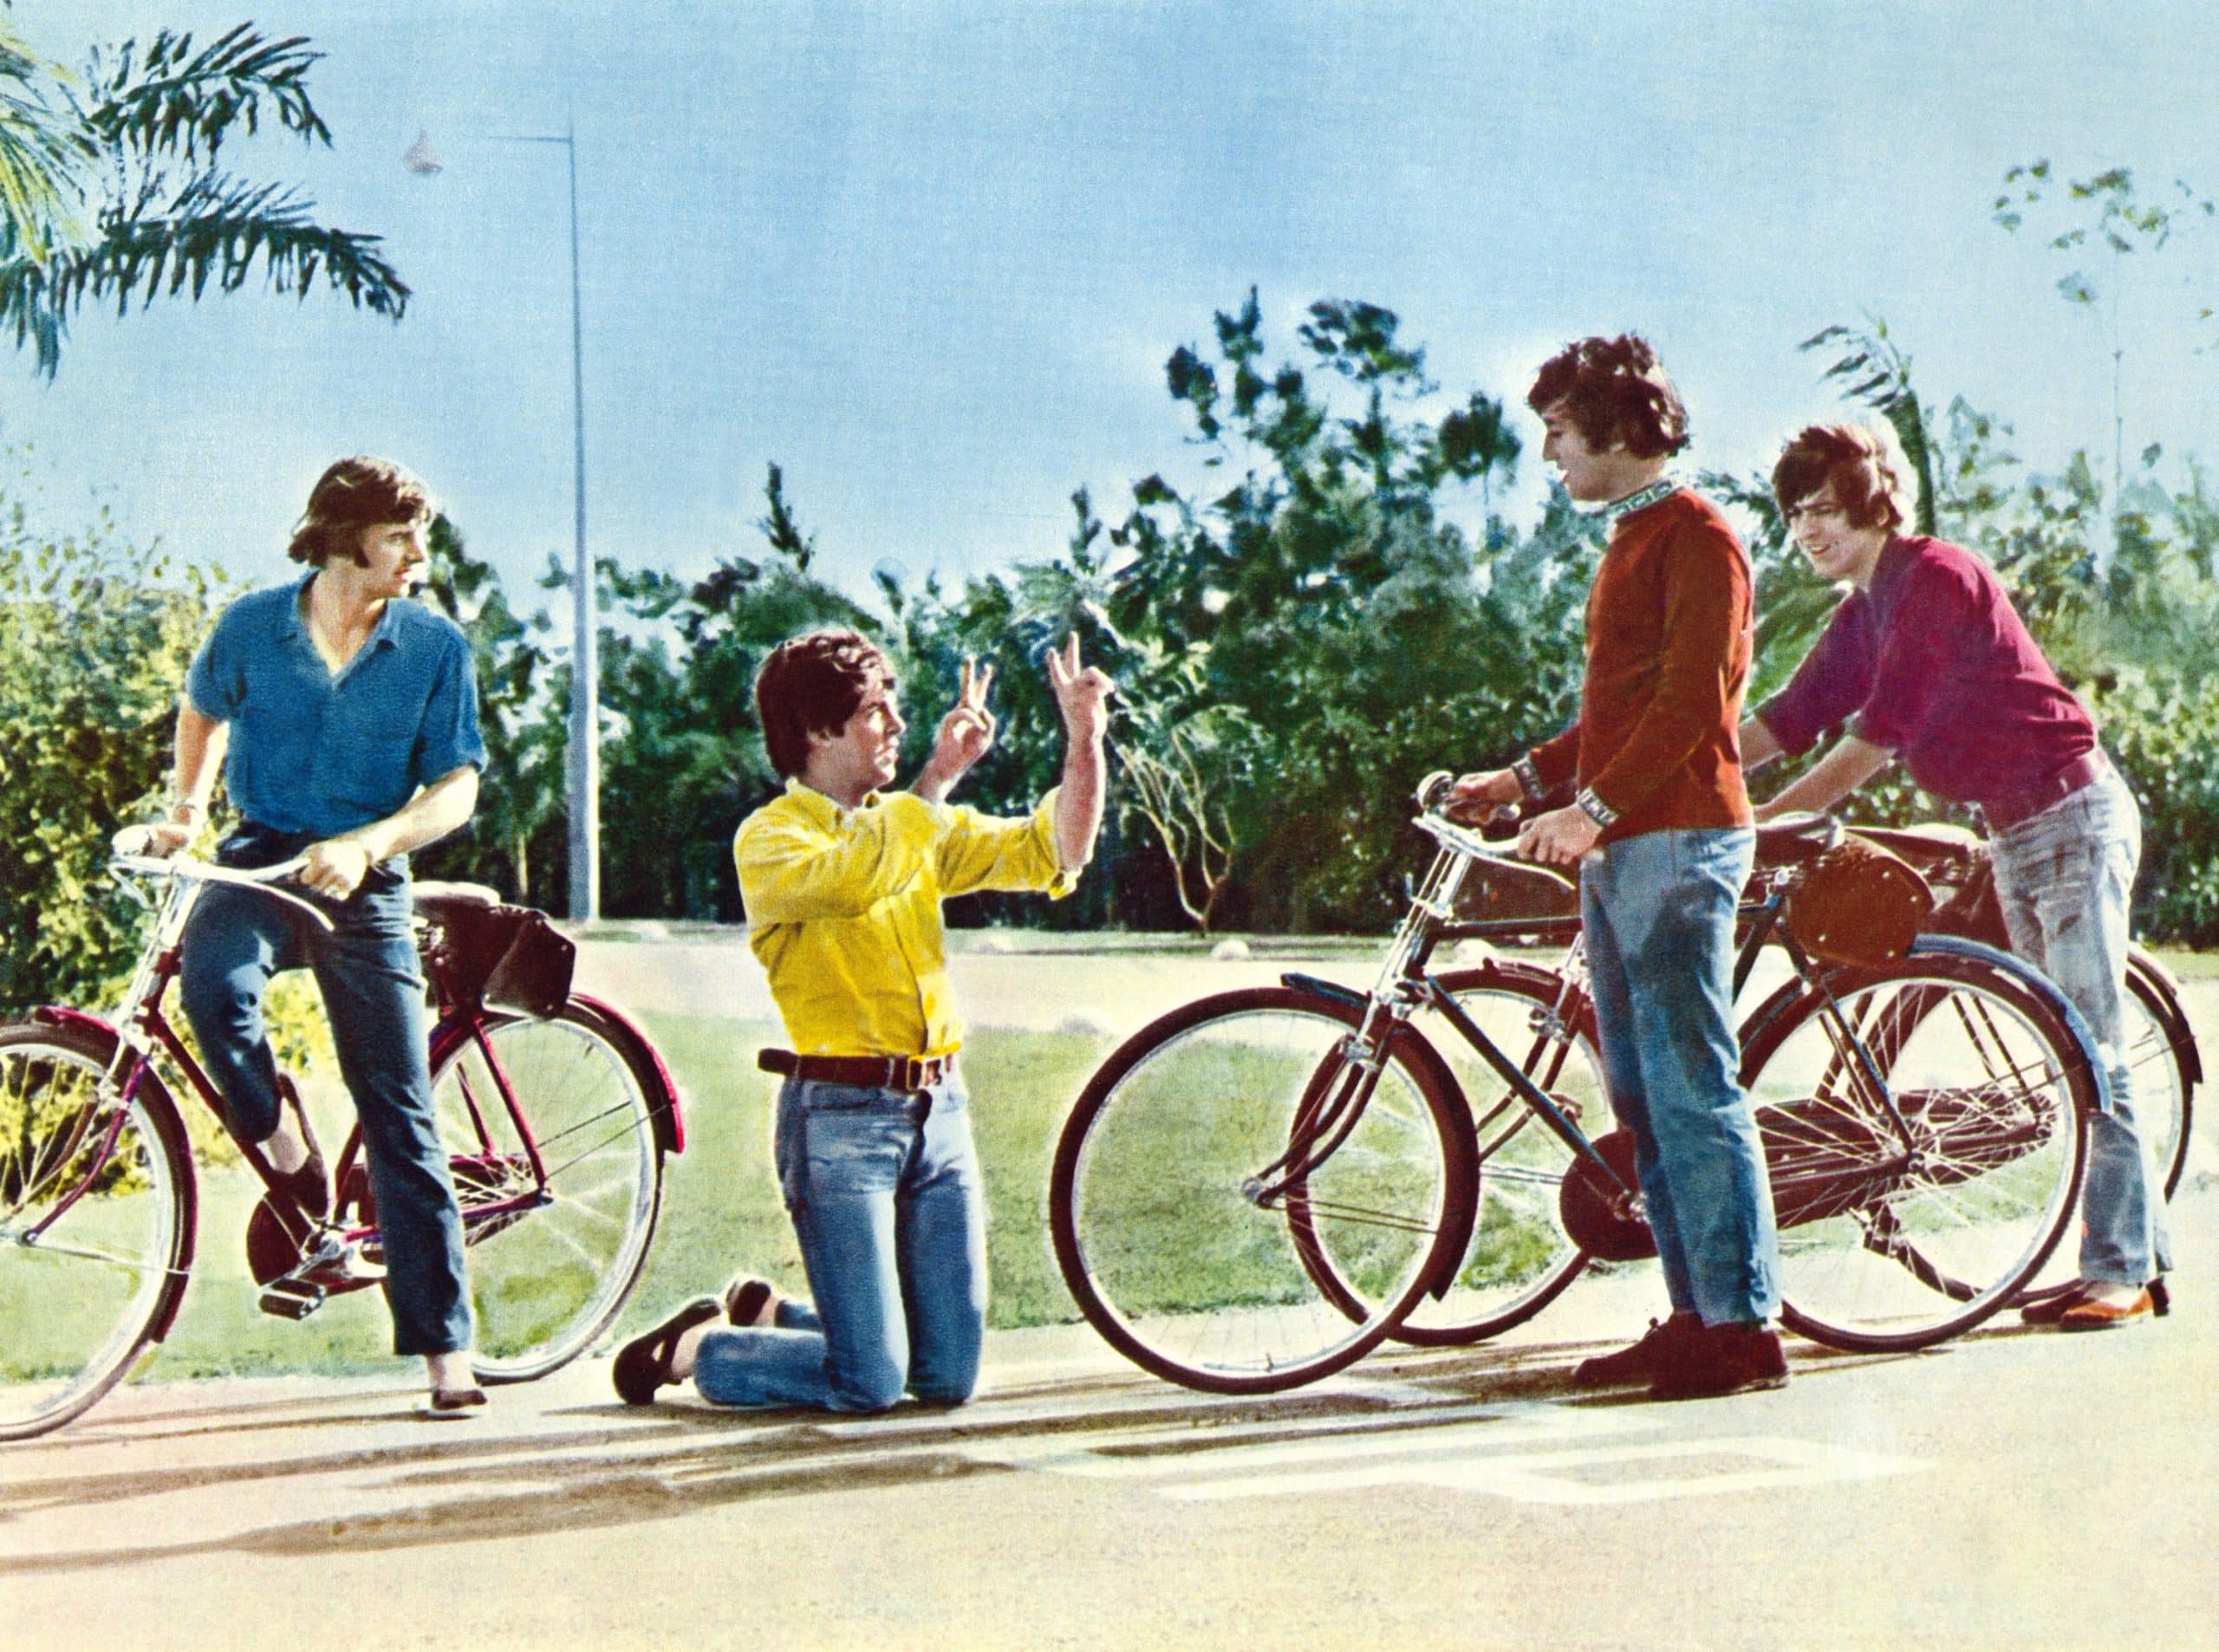 HELP!, from left: Ringo Starr, Paul McCartney, John Lennon, George Harrison, 1965 